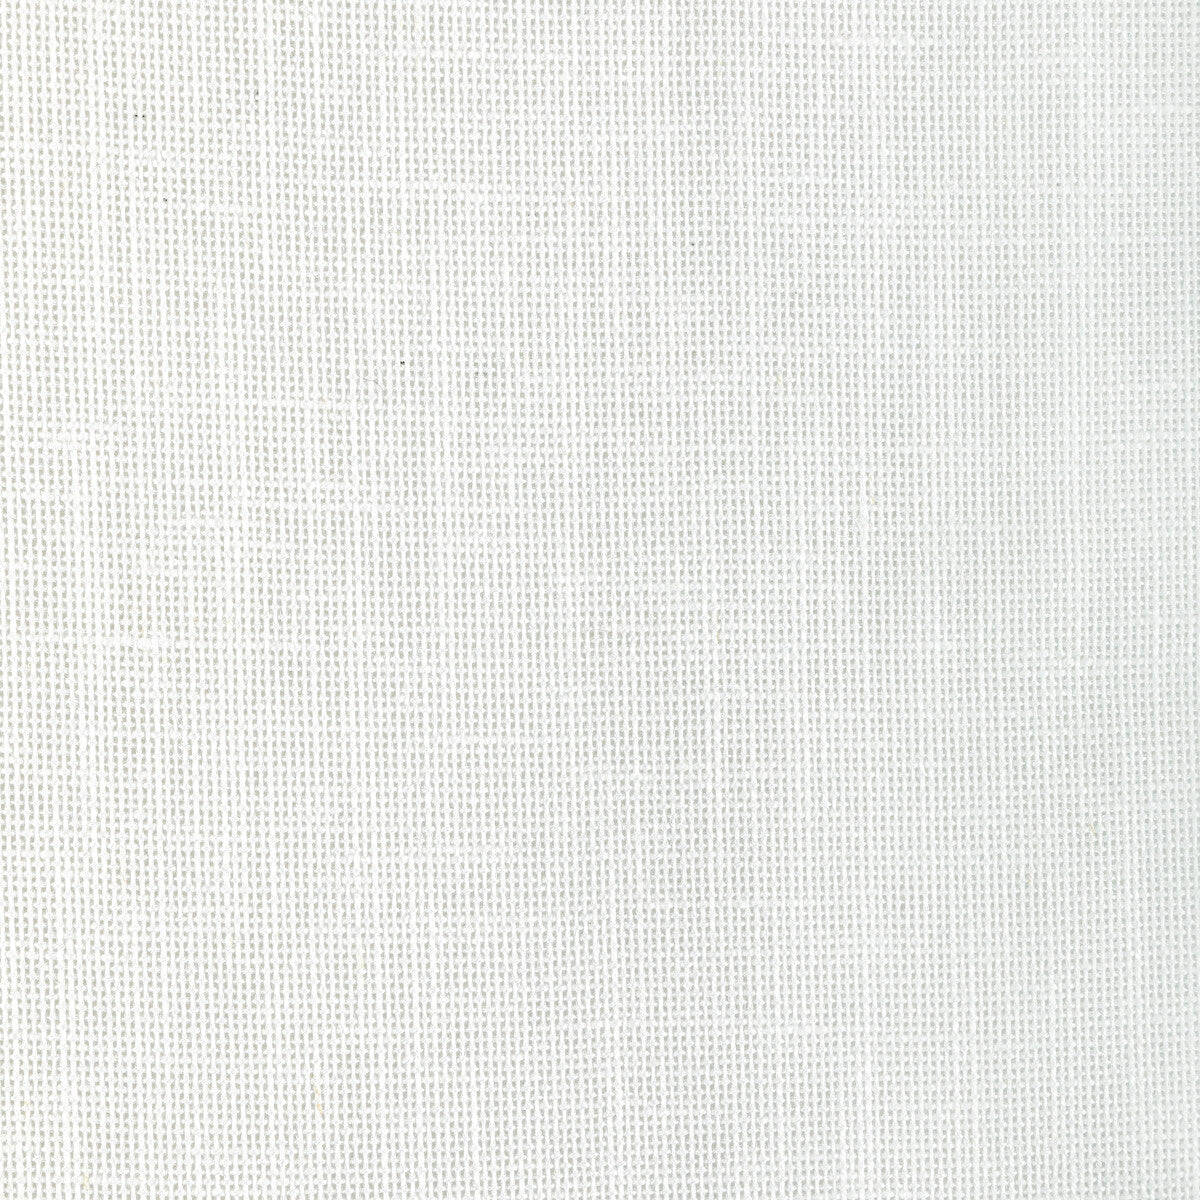 Kravet Basics fabric in 4939-1 color - pattern 4939.1.0 - by Kravet Basics